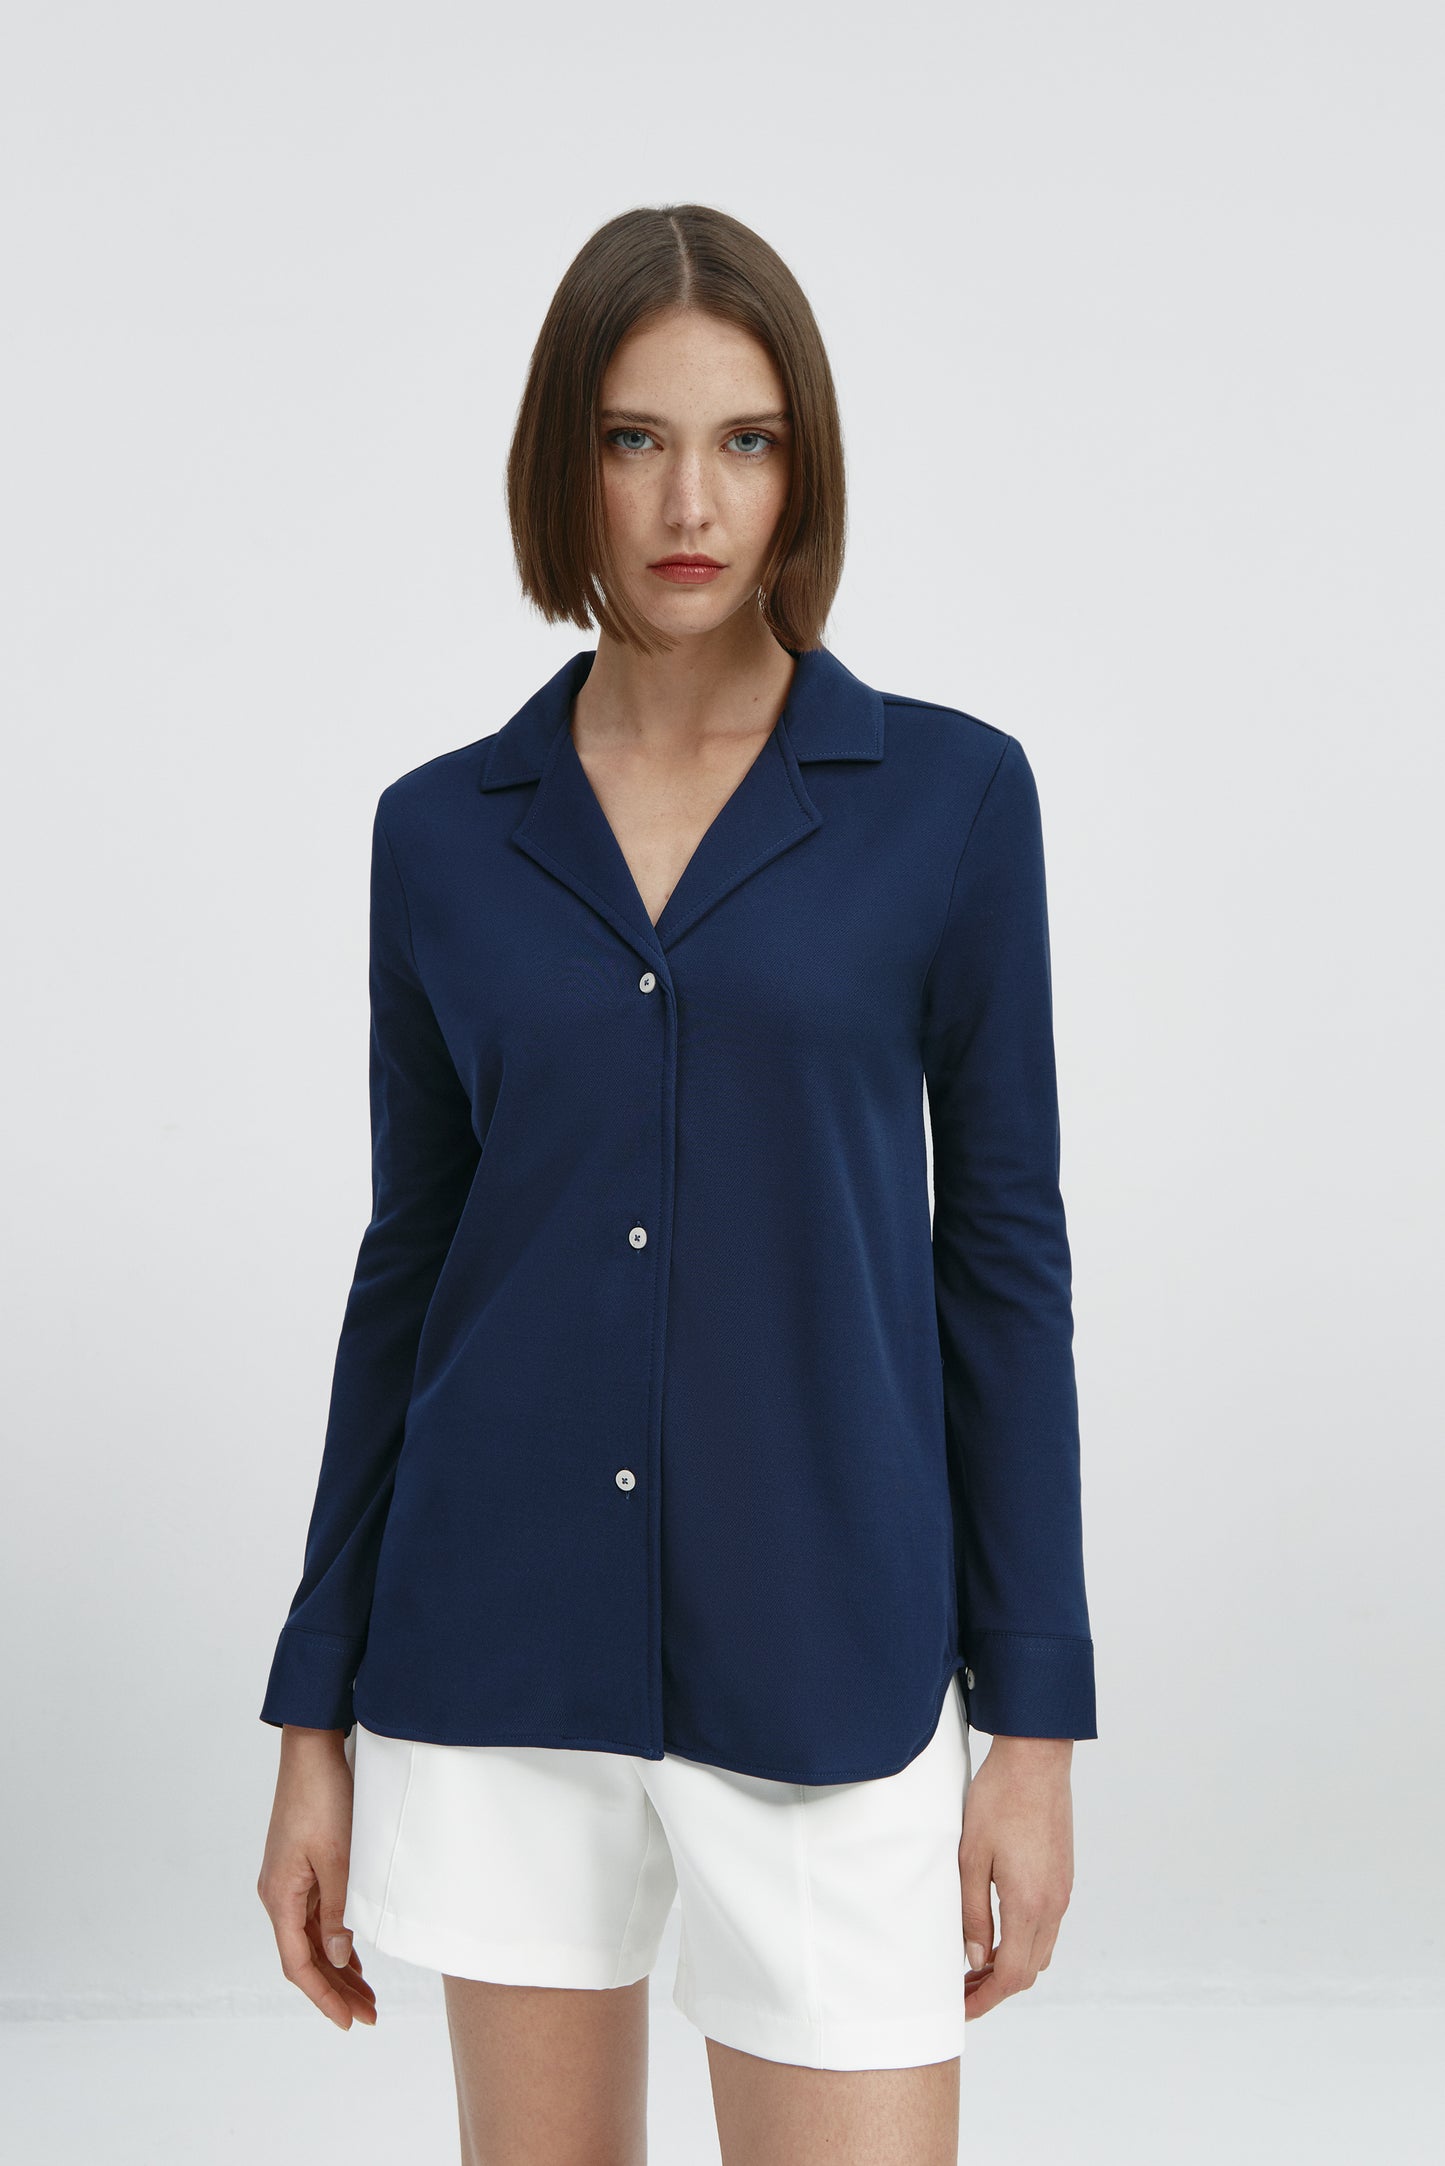 Camisa bowling de mujer azul marino de Sepiia, estilo y versatilidad en una prenda cómoda y resistente. Foto frente